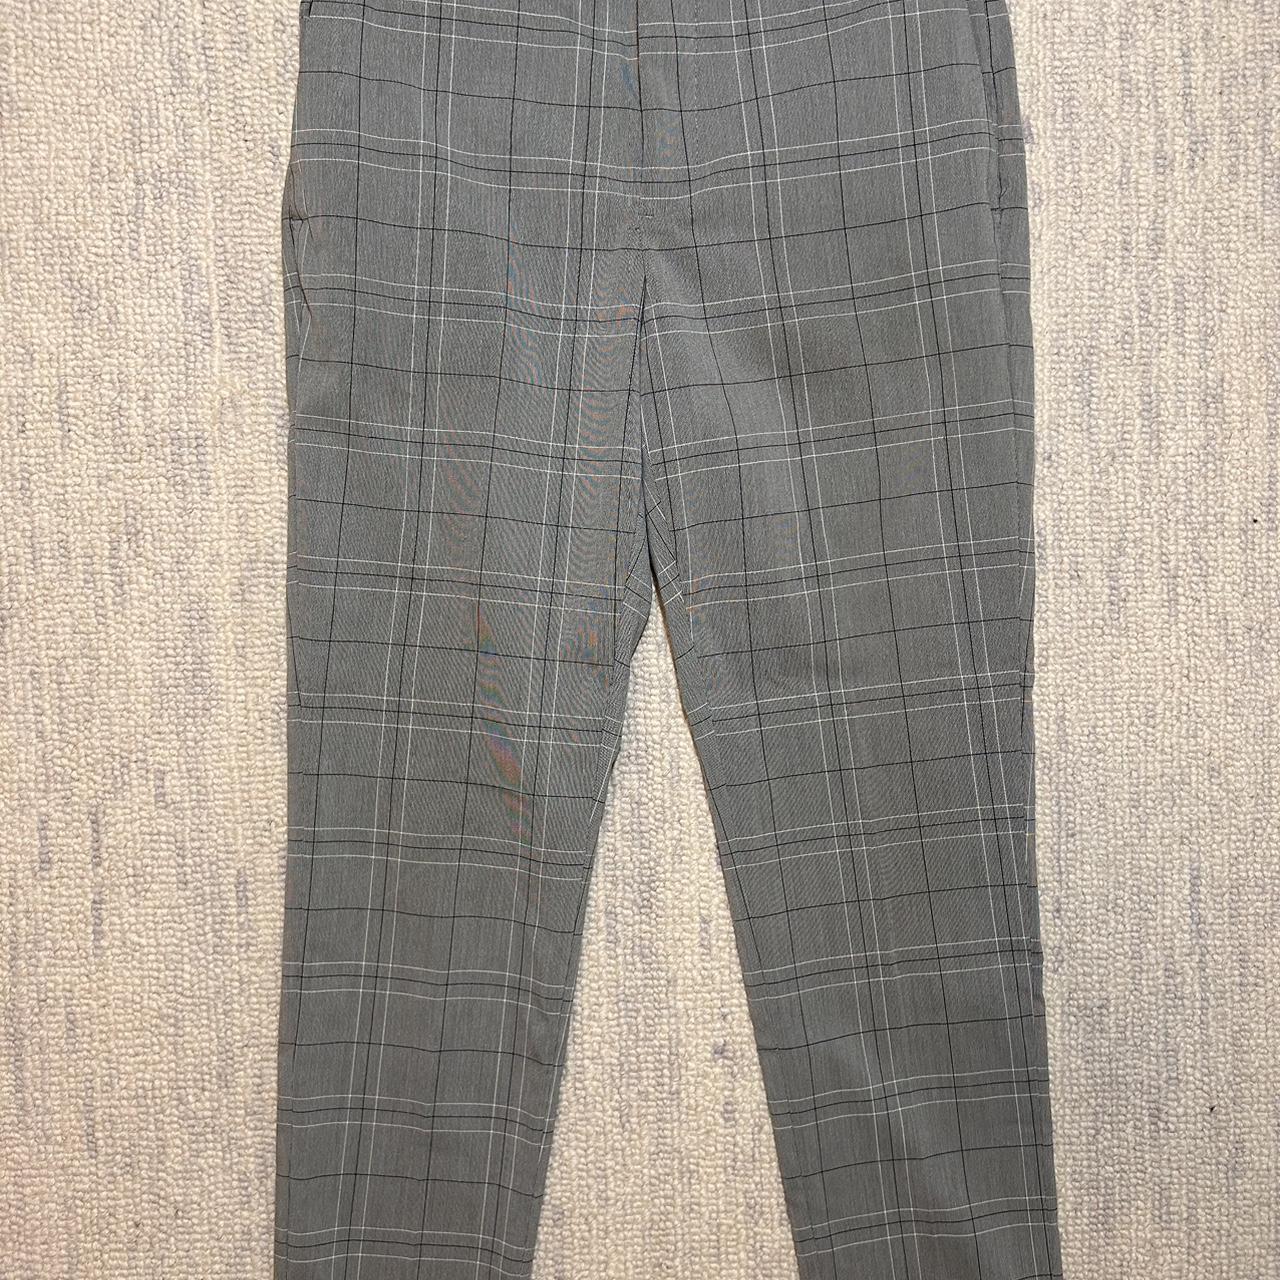 H&M men’s suit pants gray with black pattern 31 waist - Depop